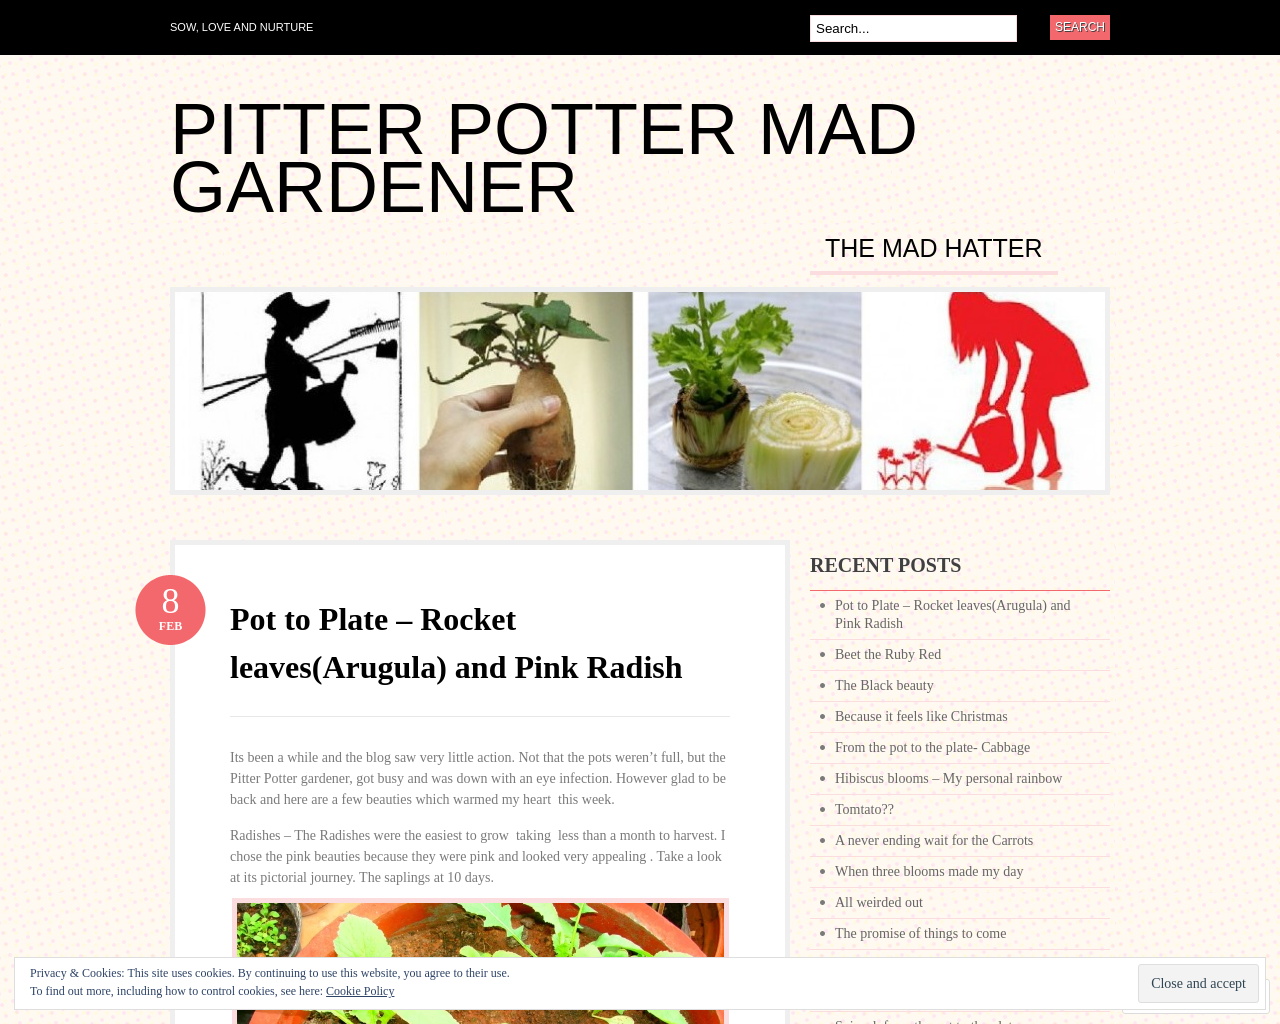 Pitter Potter Gardener